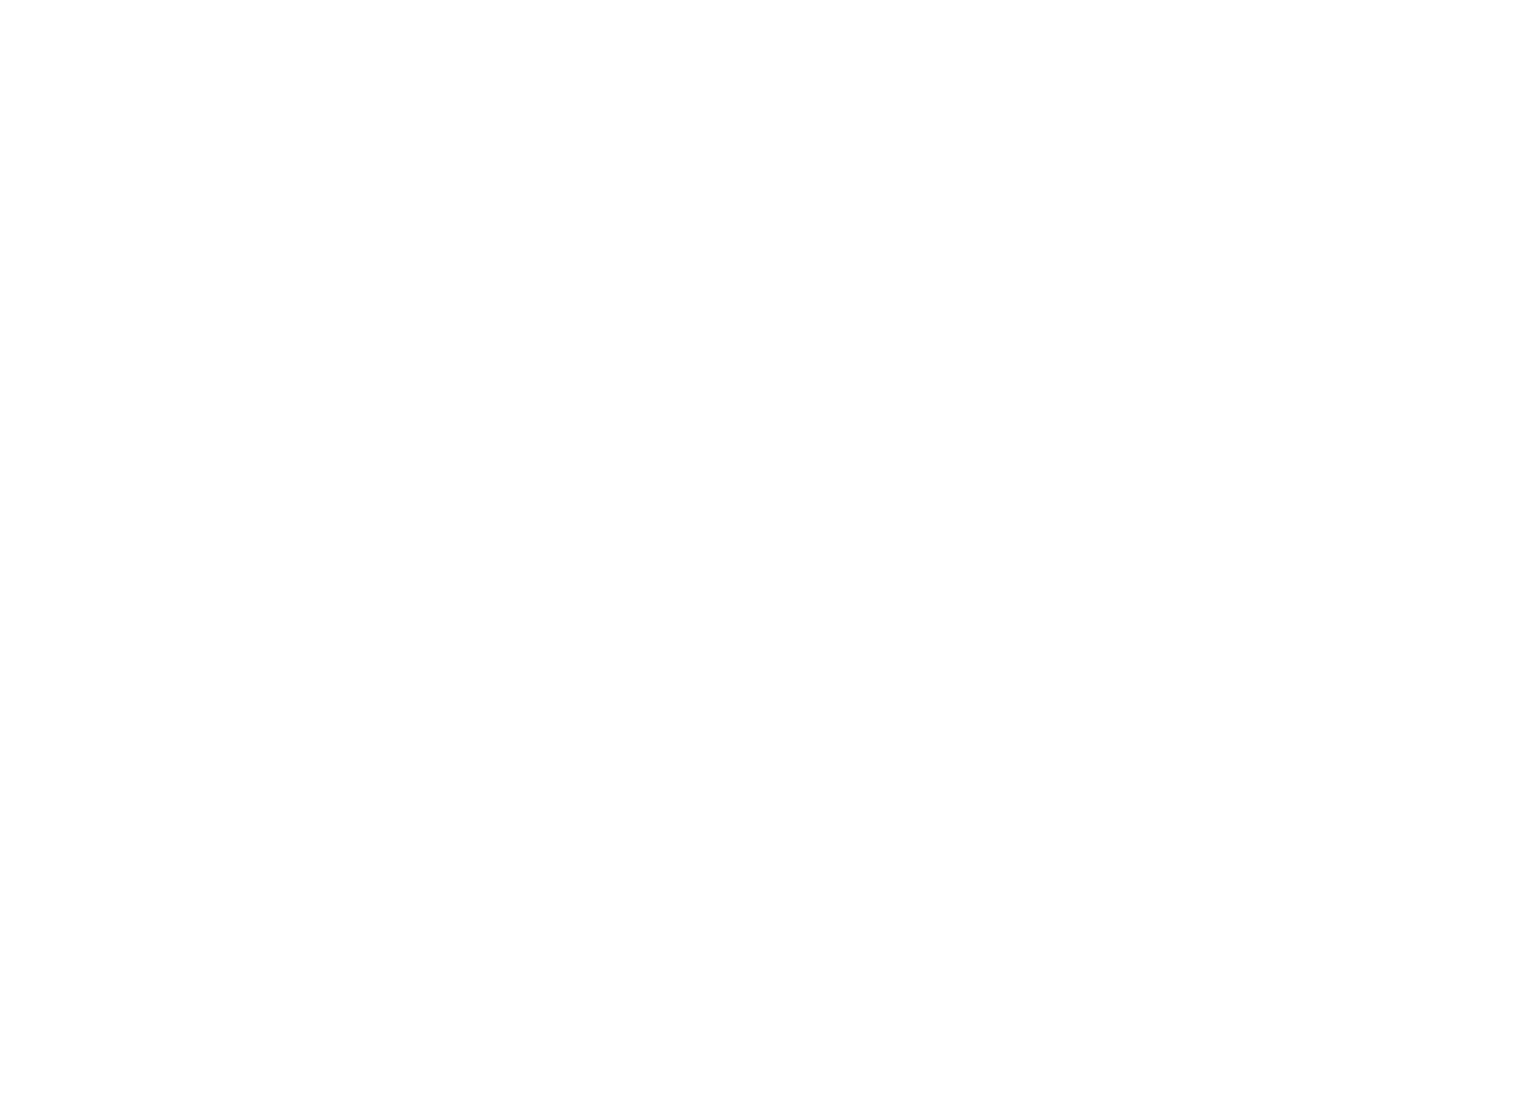 Stripped Jerky